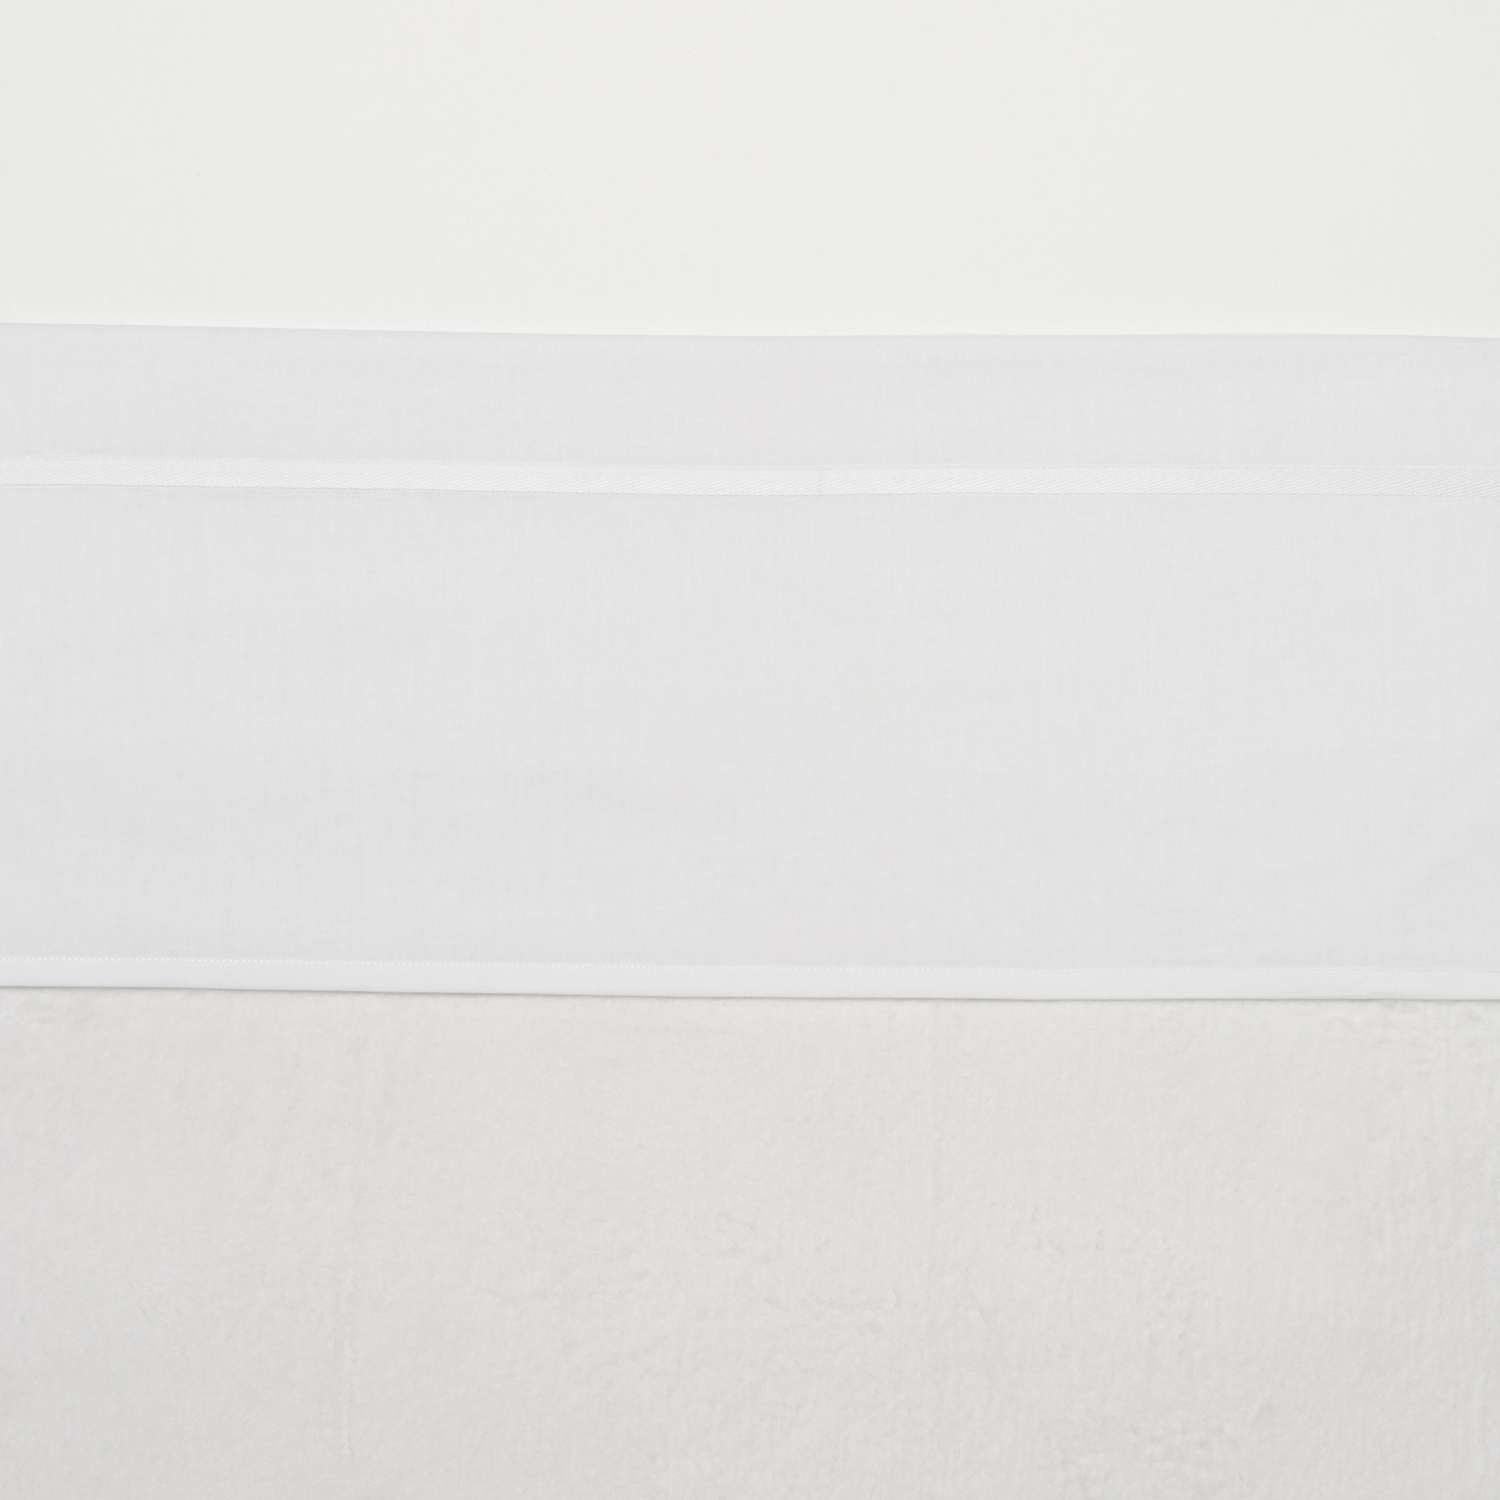 Ledikant laken Bies - white - 100x150cm